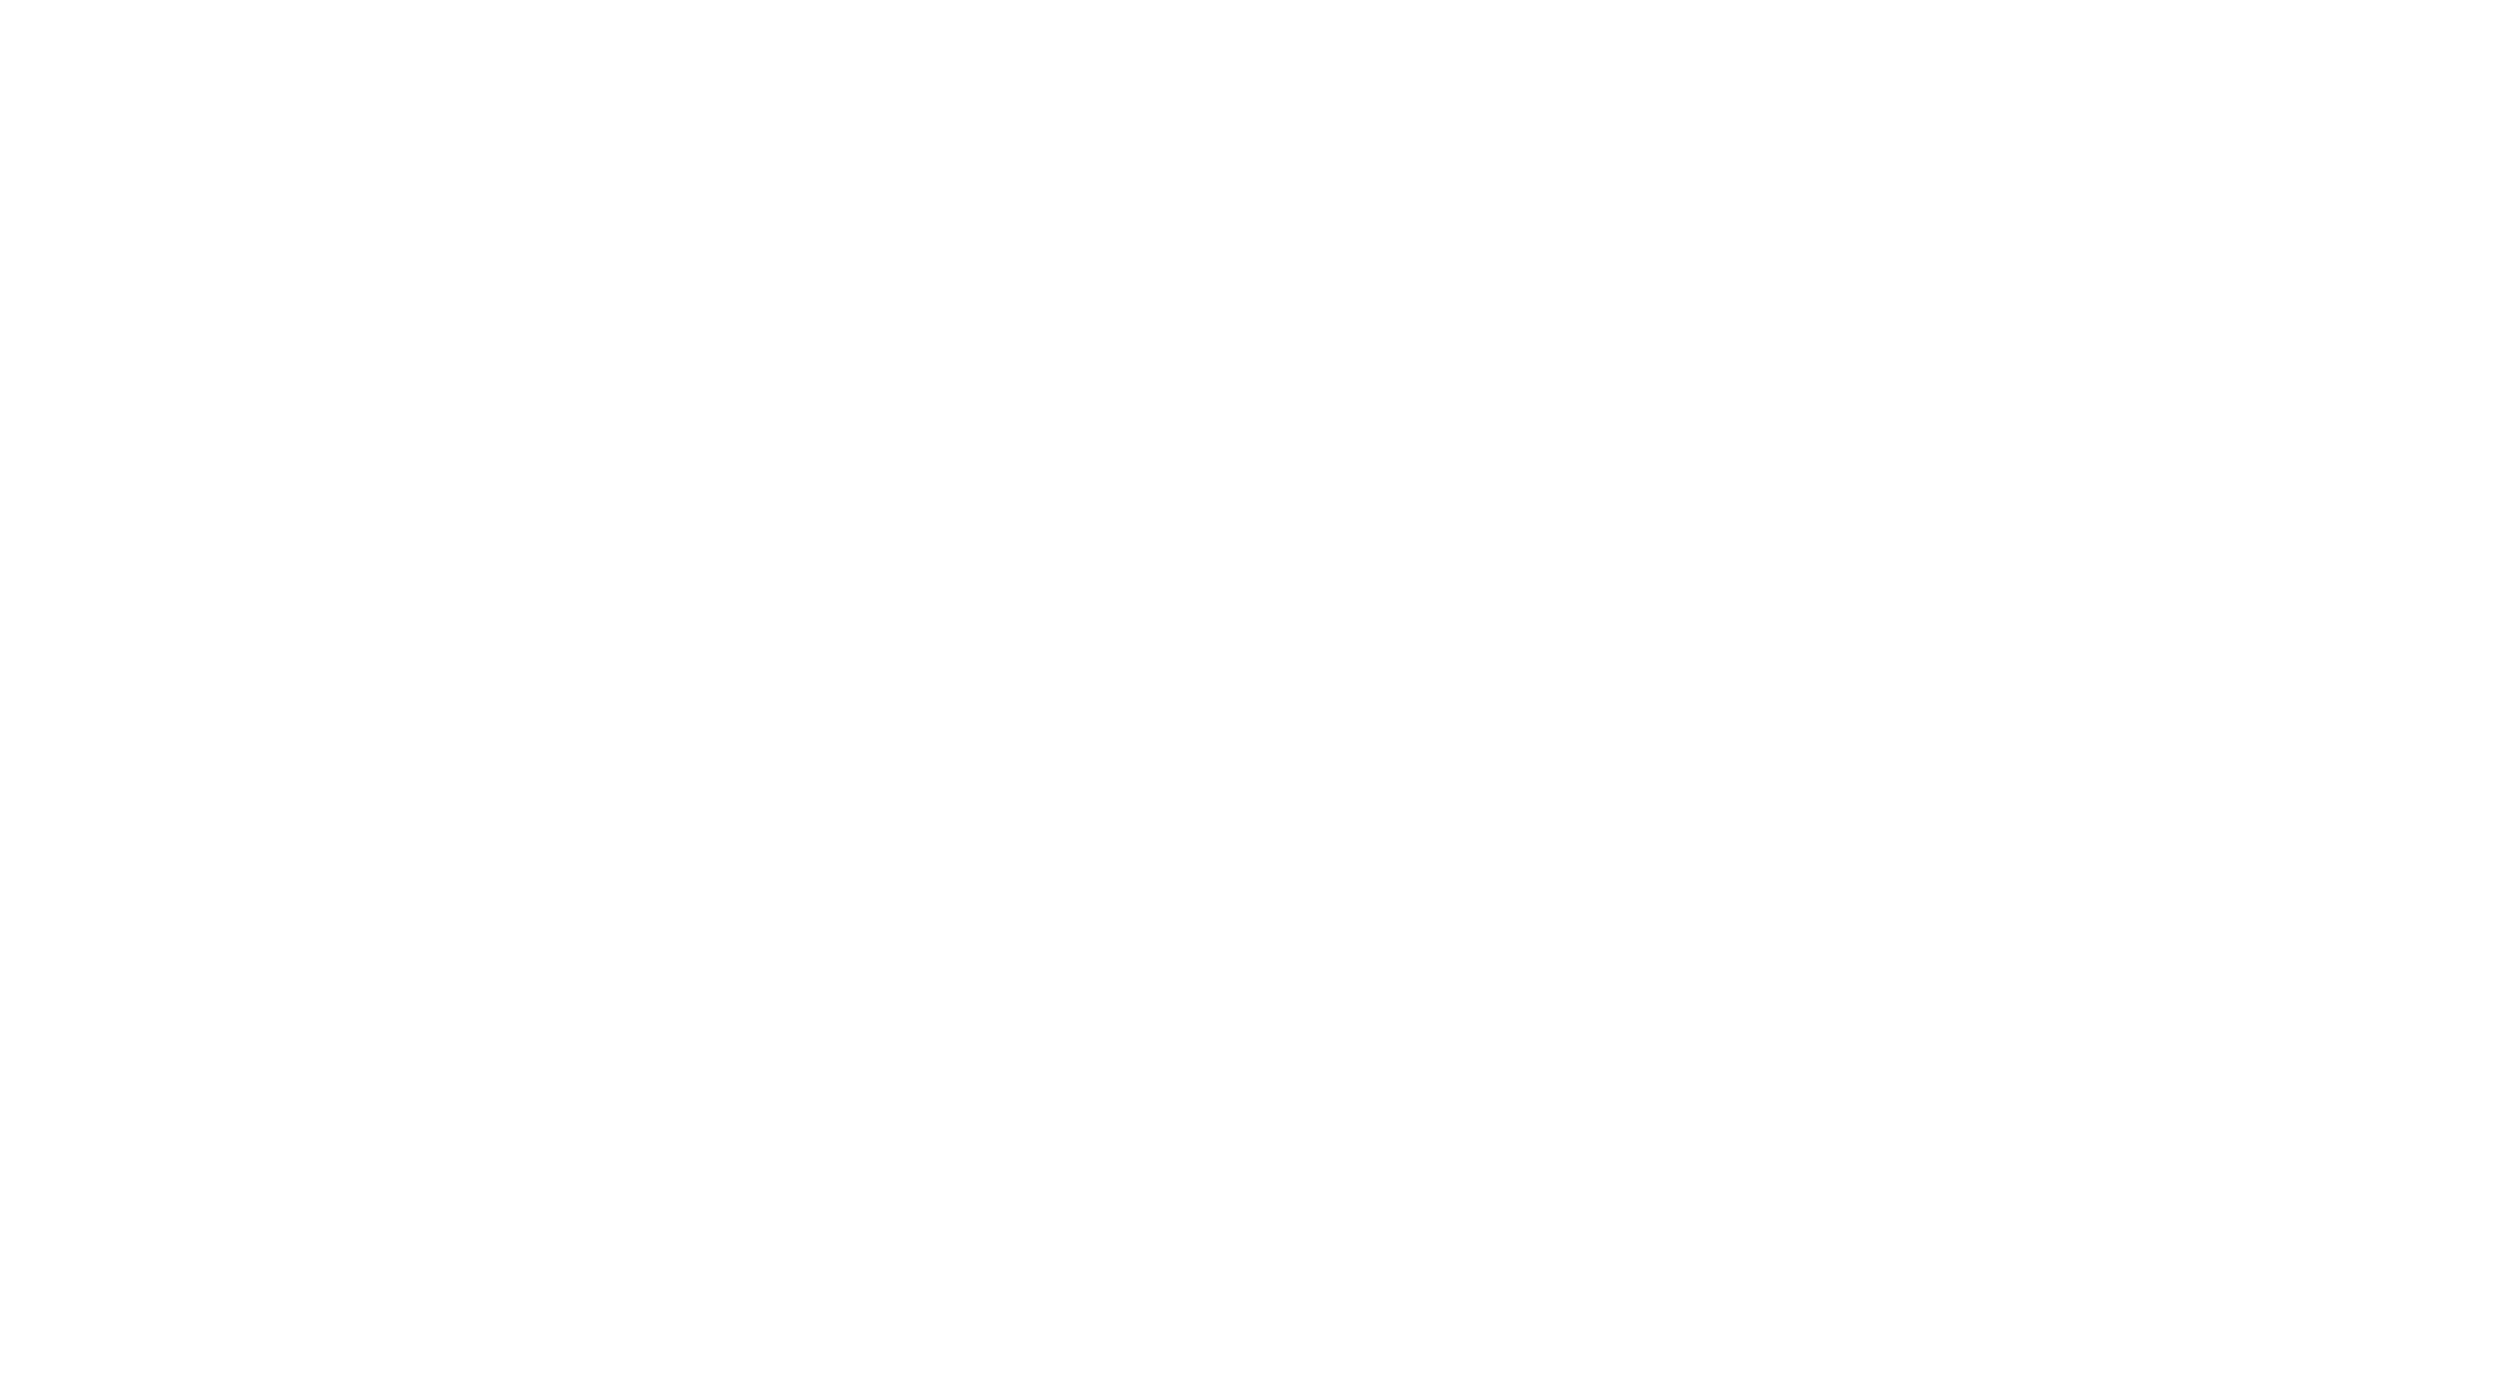 Global Teen Challenge